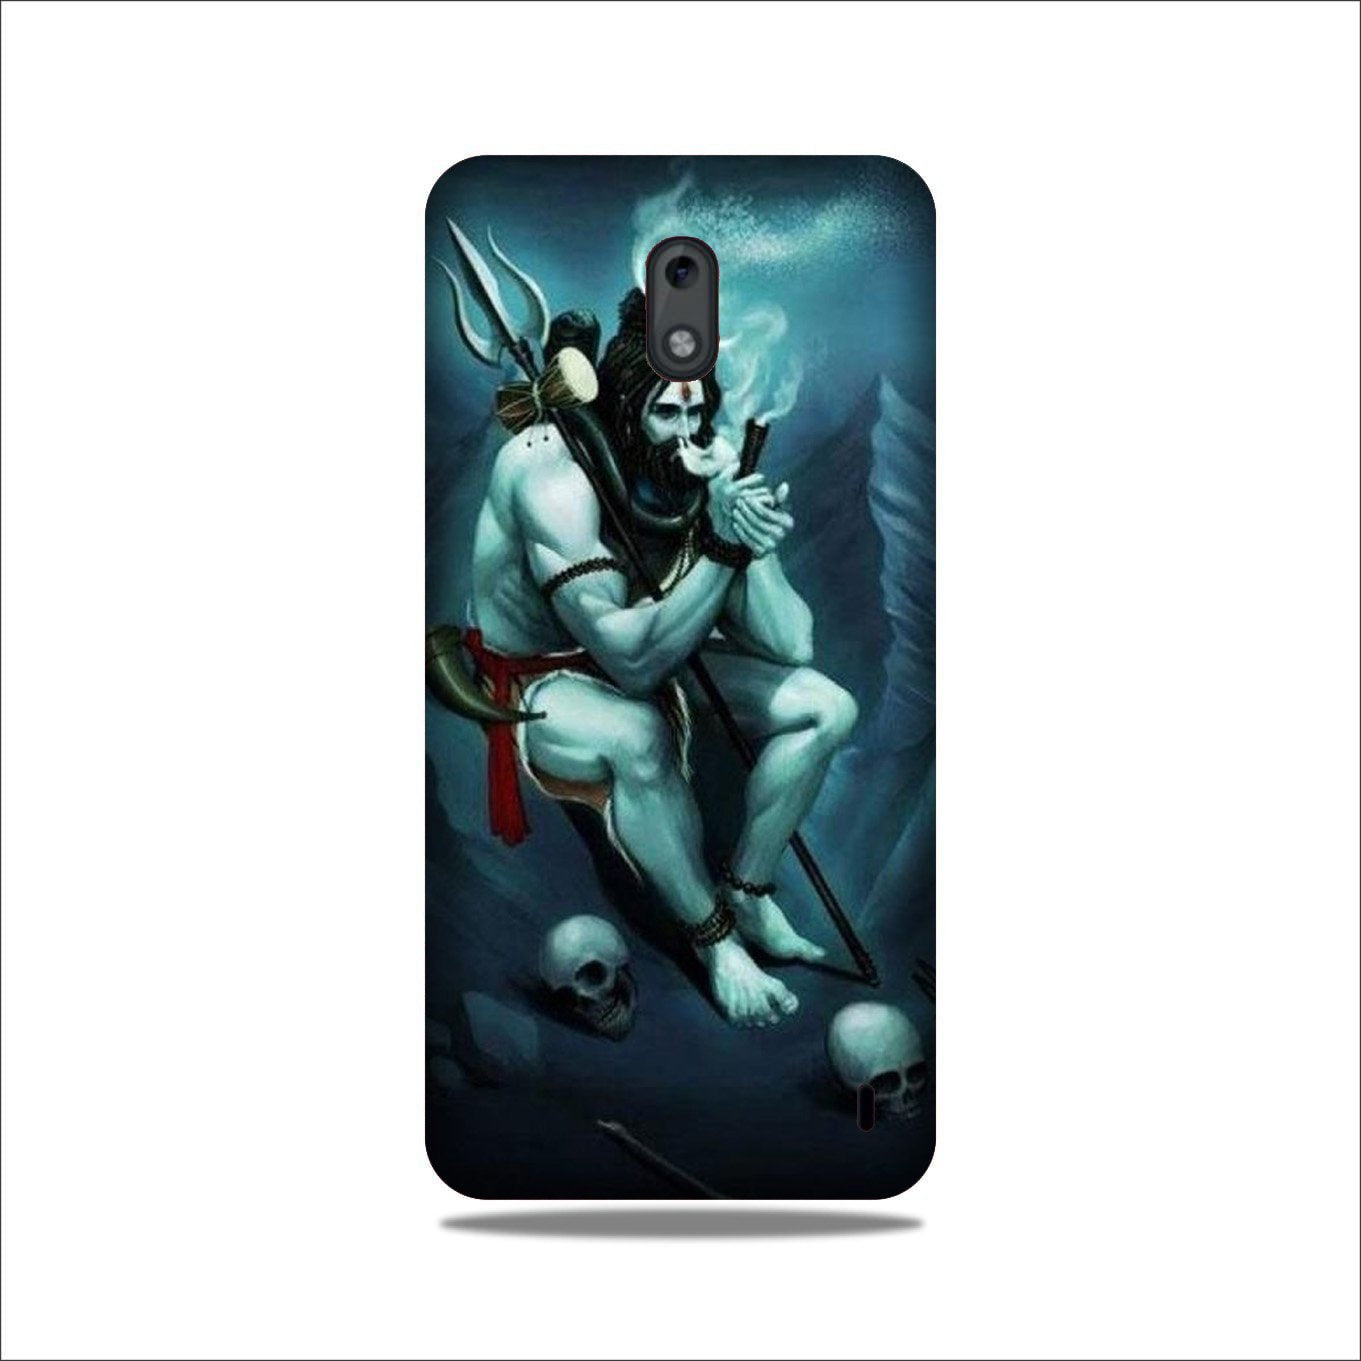 Lord Shiva Mahakal2 Case for Nokia 2